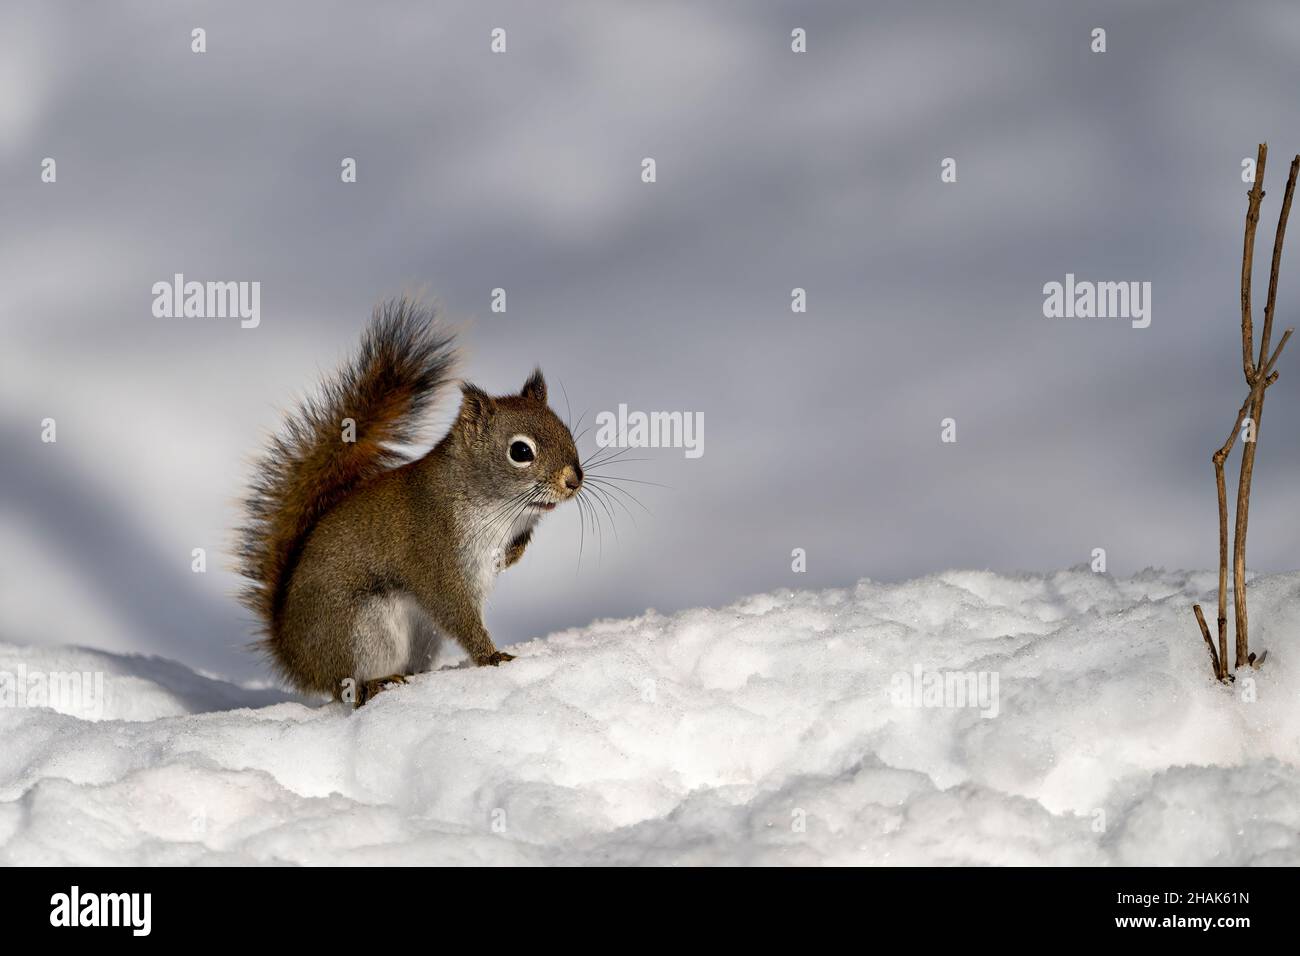 Nahaufnahme des Eichhörnchens, das auf Schnee steht, mit einem verschwommenen weißen Hintergrund in seiner Umgebung und seinem Lebensraum mit braunem Fell. Bild. Stockfoto